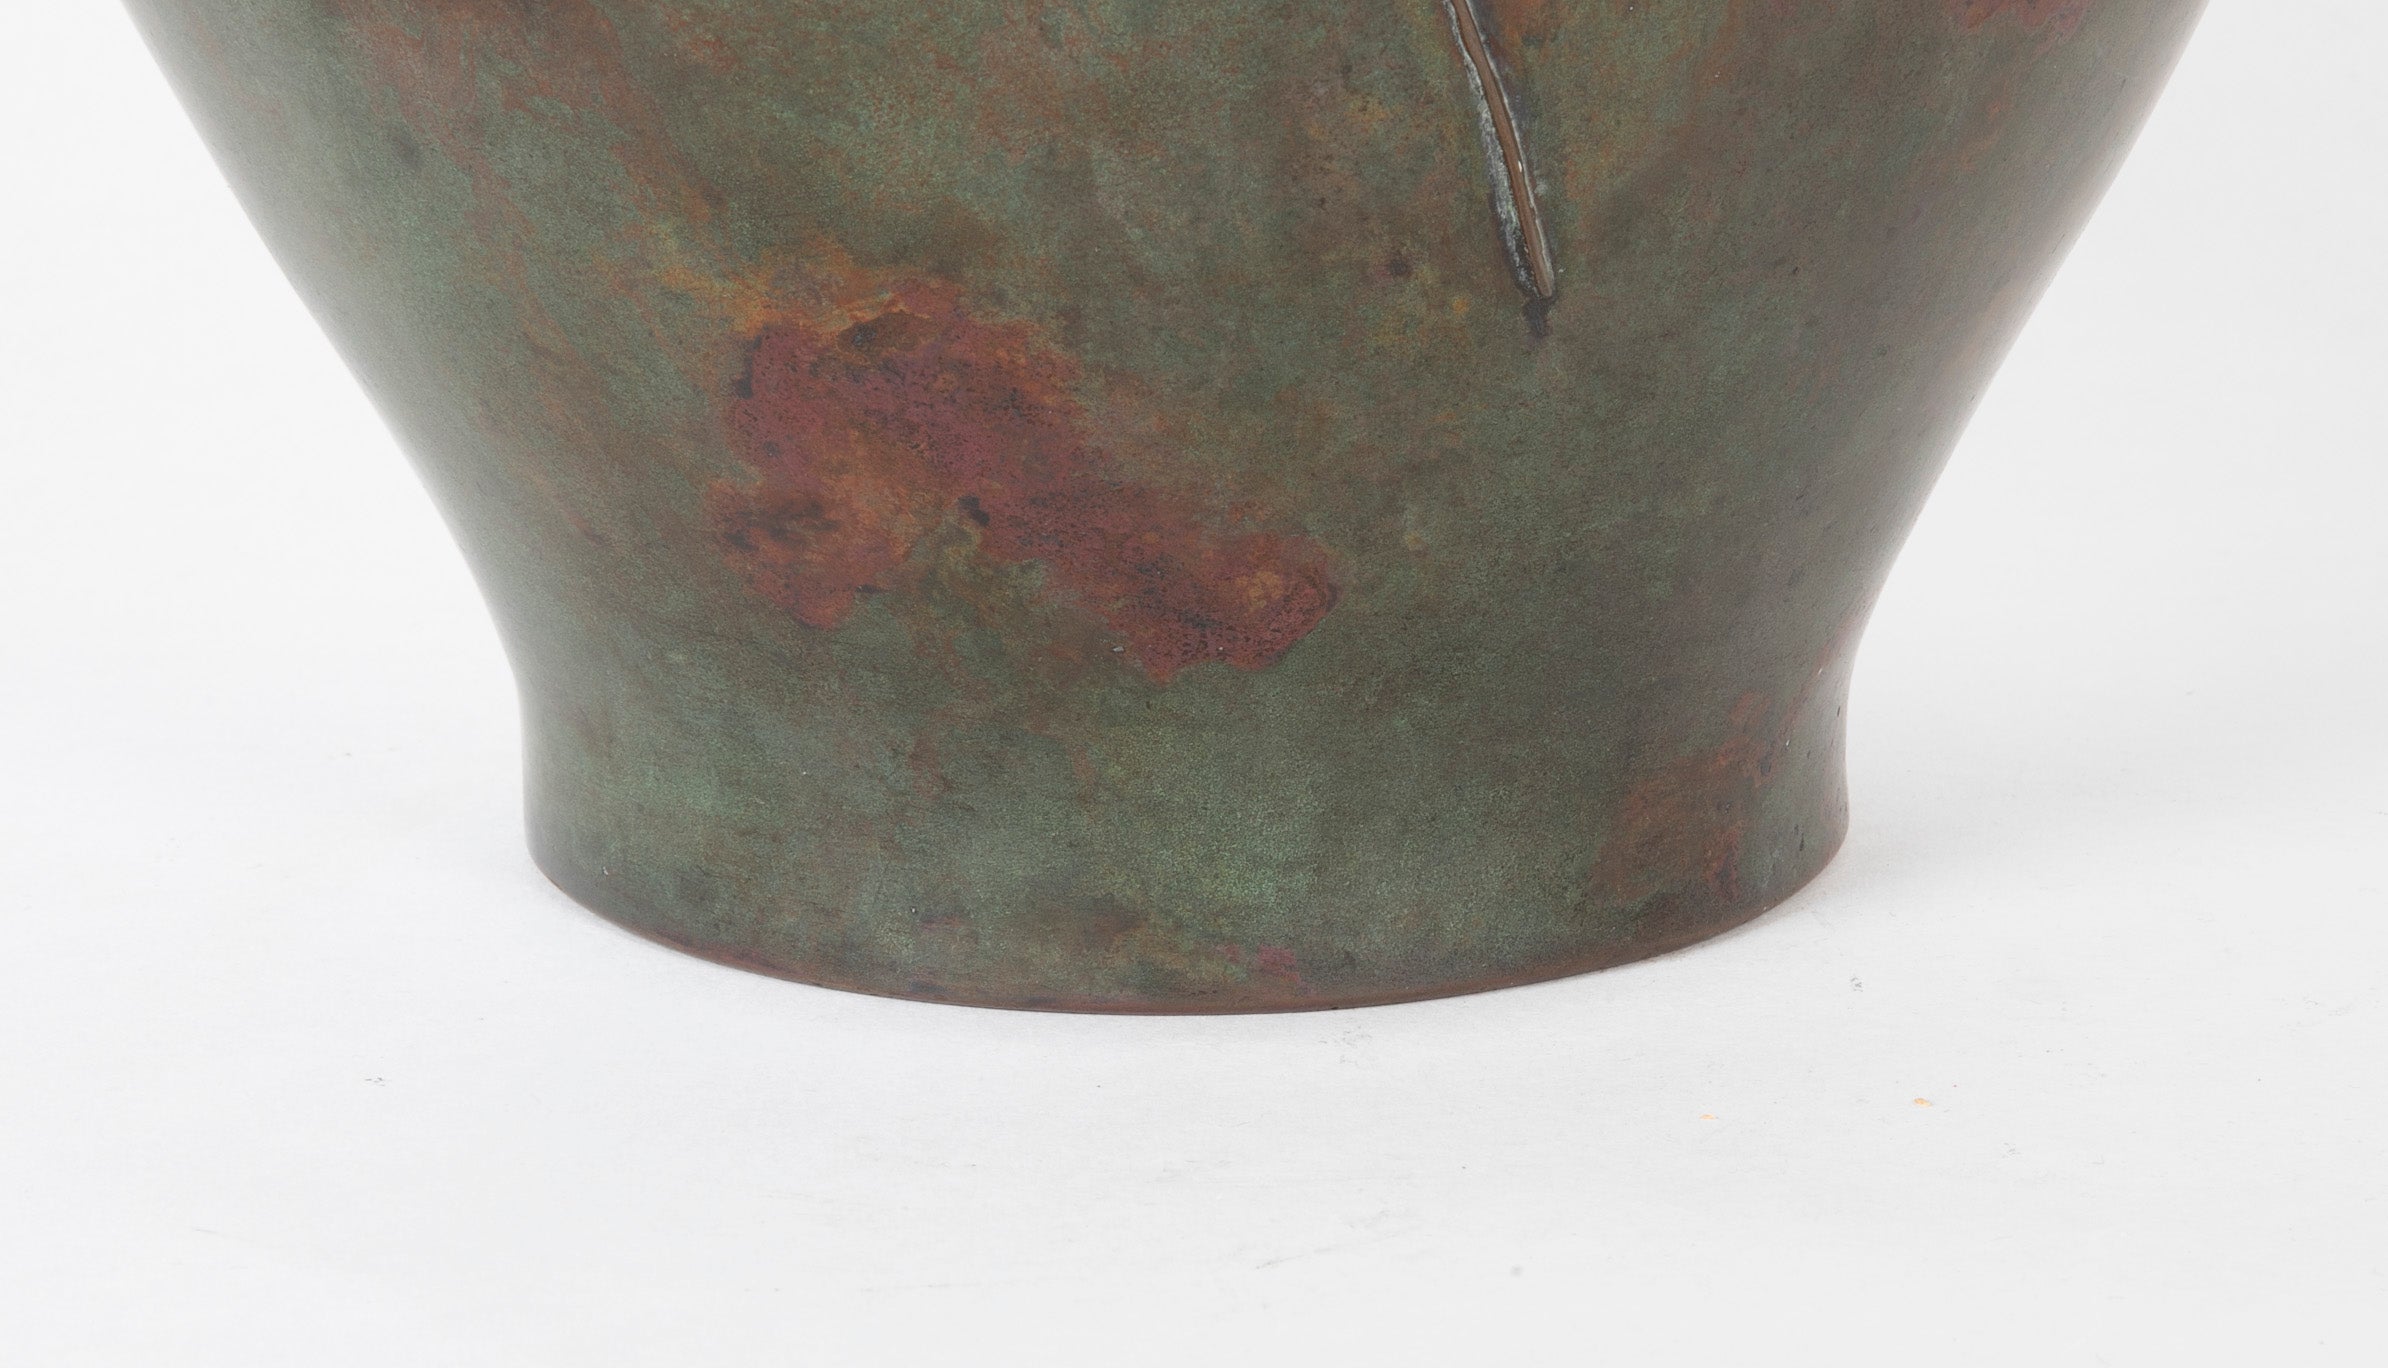 Japanese Bronze Meiji Period Vase with Prawns